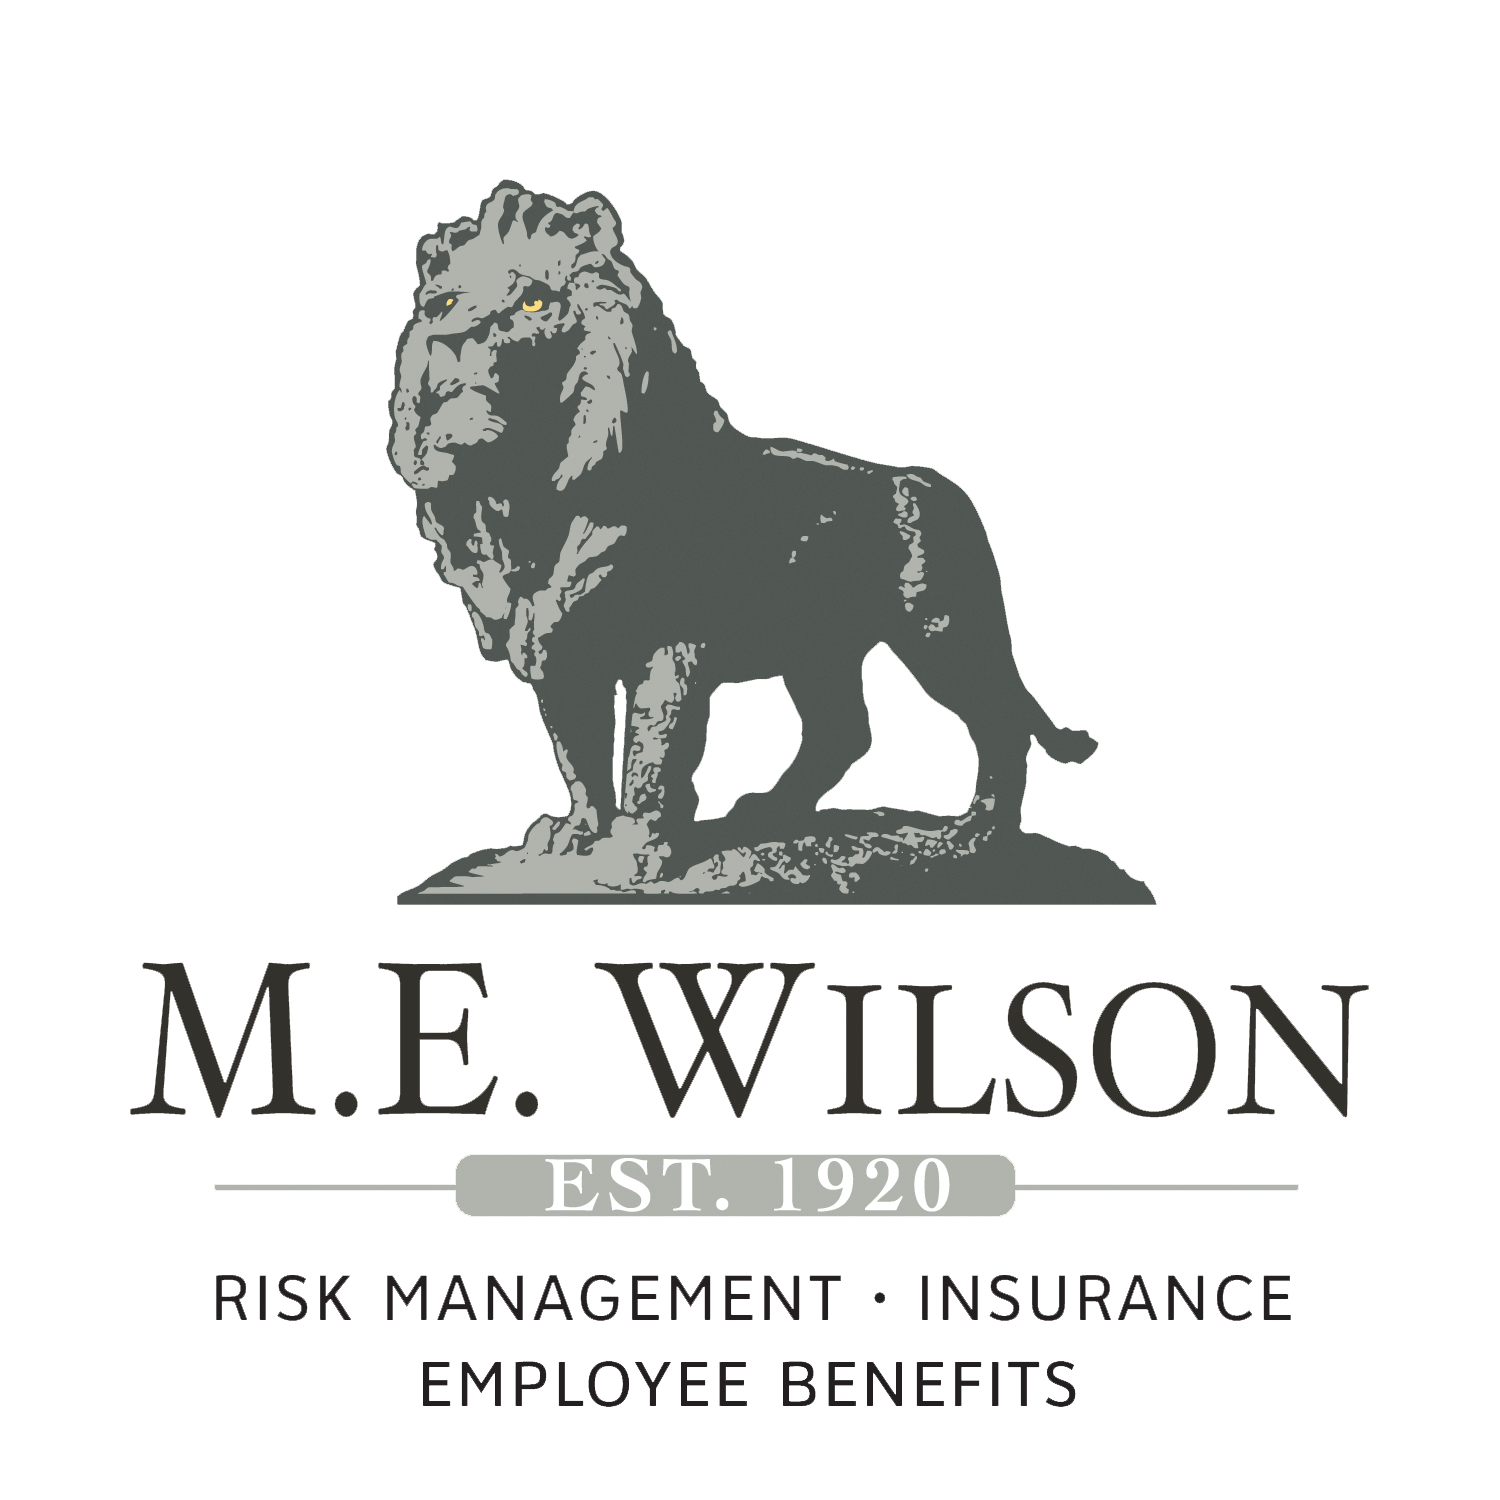 M.E. Wilson